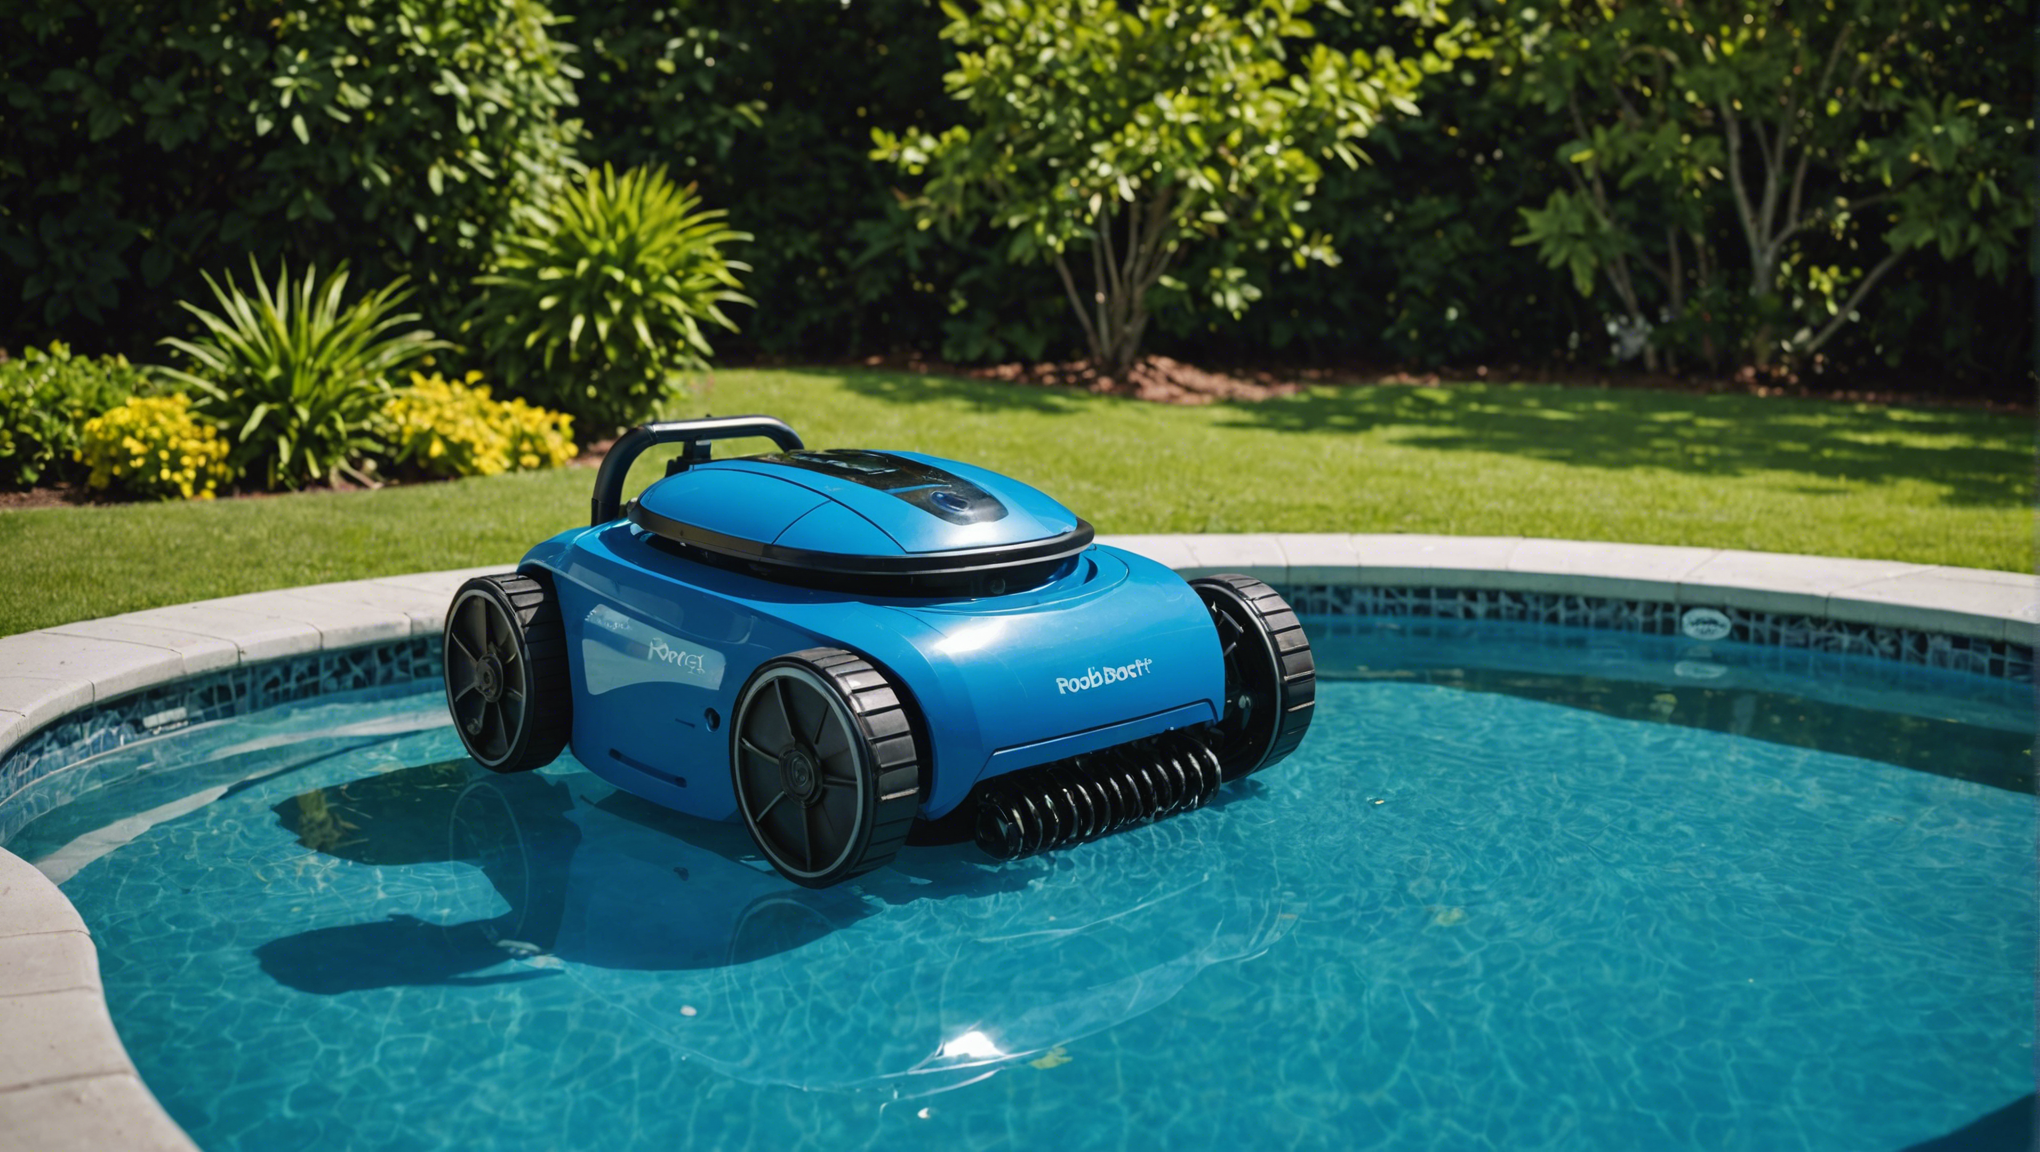 découvrez les meilleurs conseils pour l'entretien efficace de votre robot de piscine et profitez d'une piscine toujours propre et agréable grâce à nos astuces pratiques.